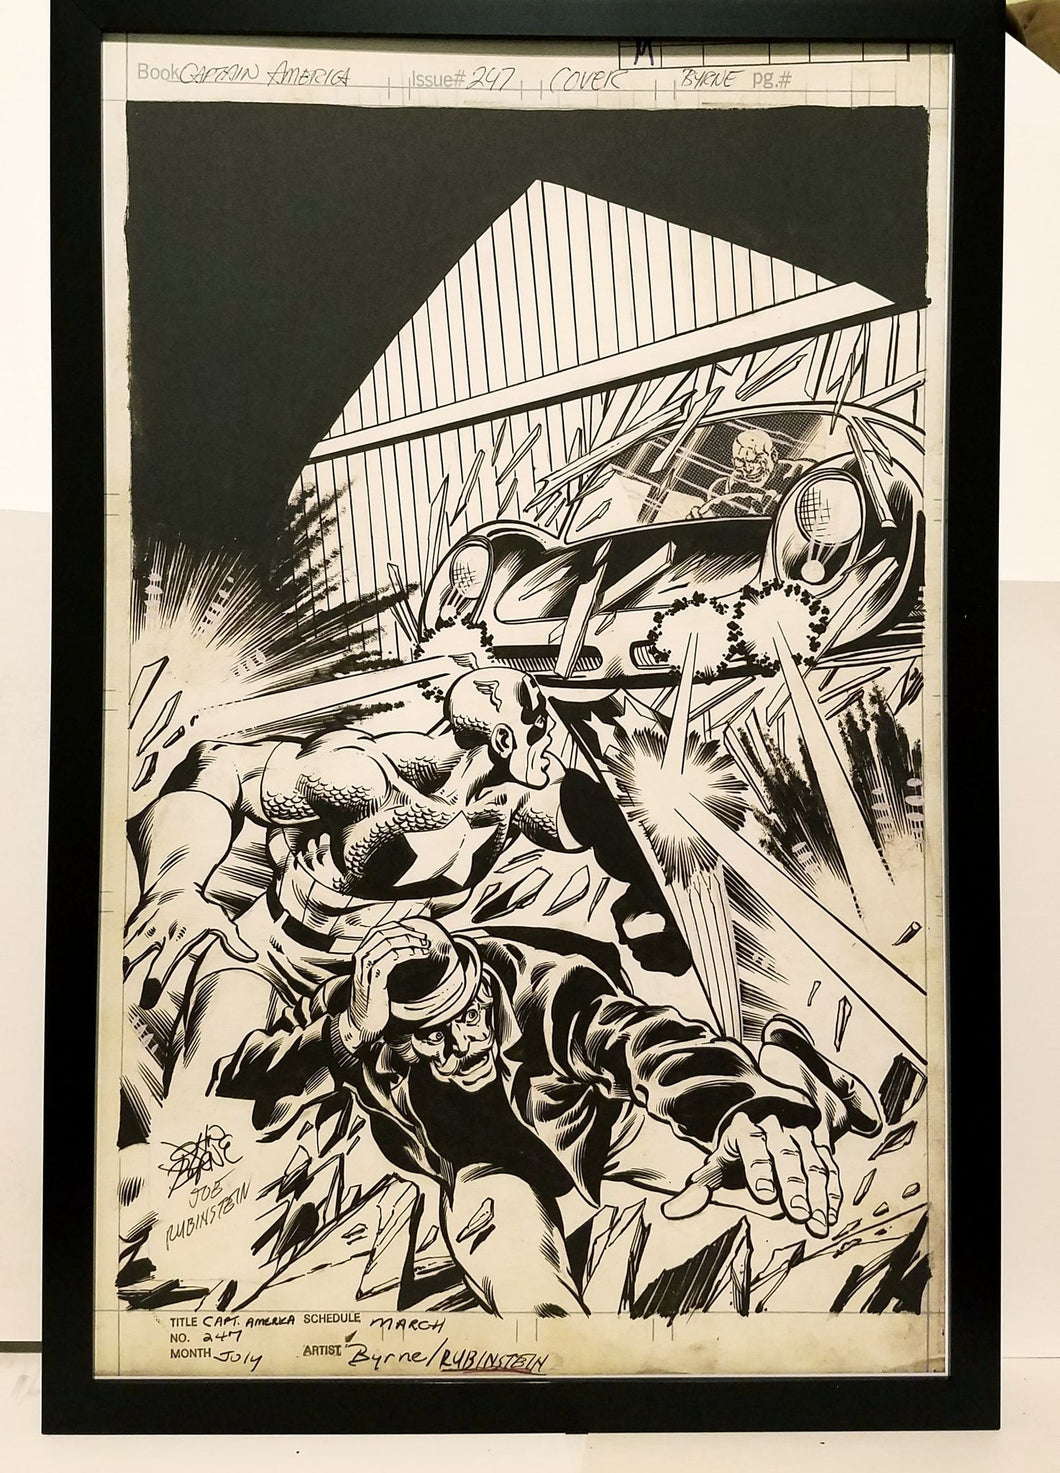 Captain America #247 by John Byrne 11x17 FRAMED Original Art Poster Marvel Comics